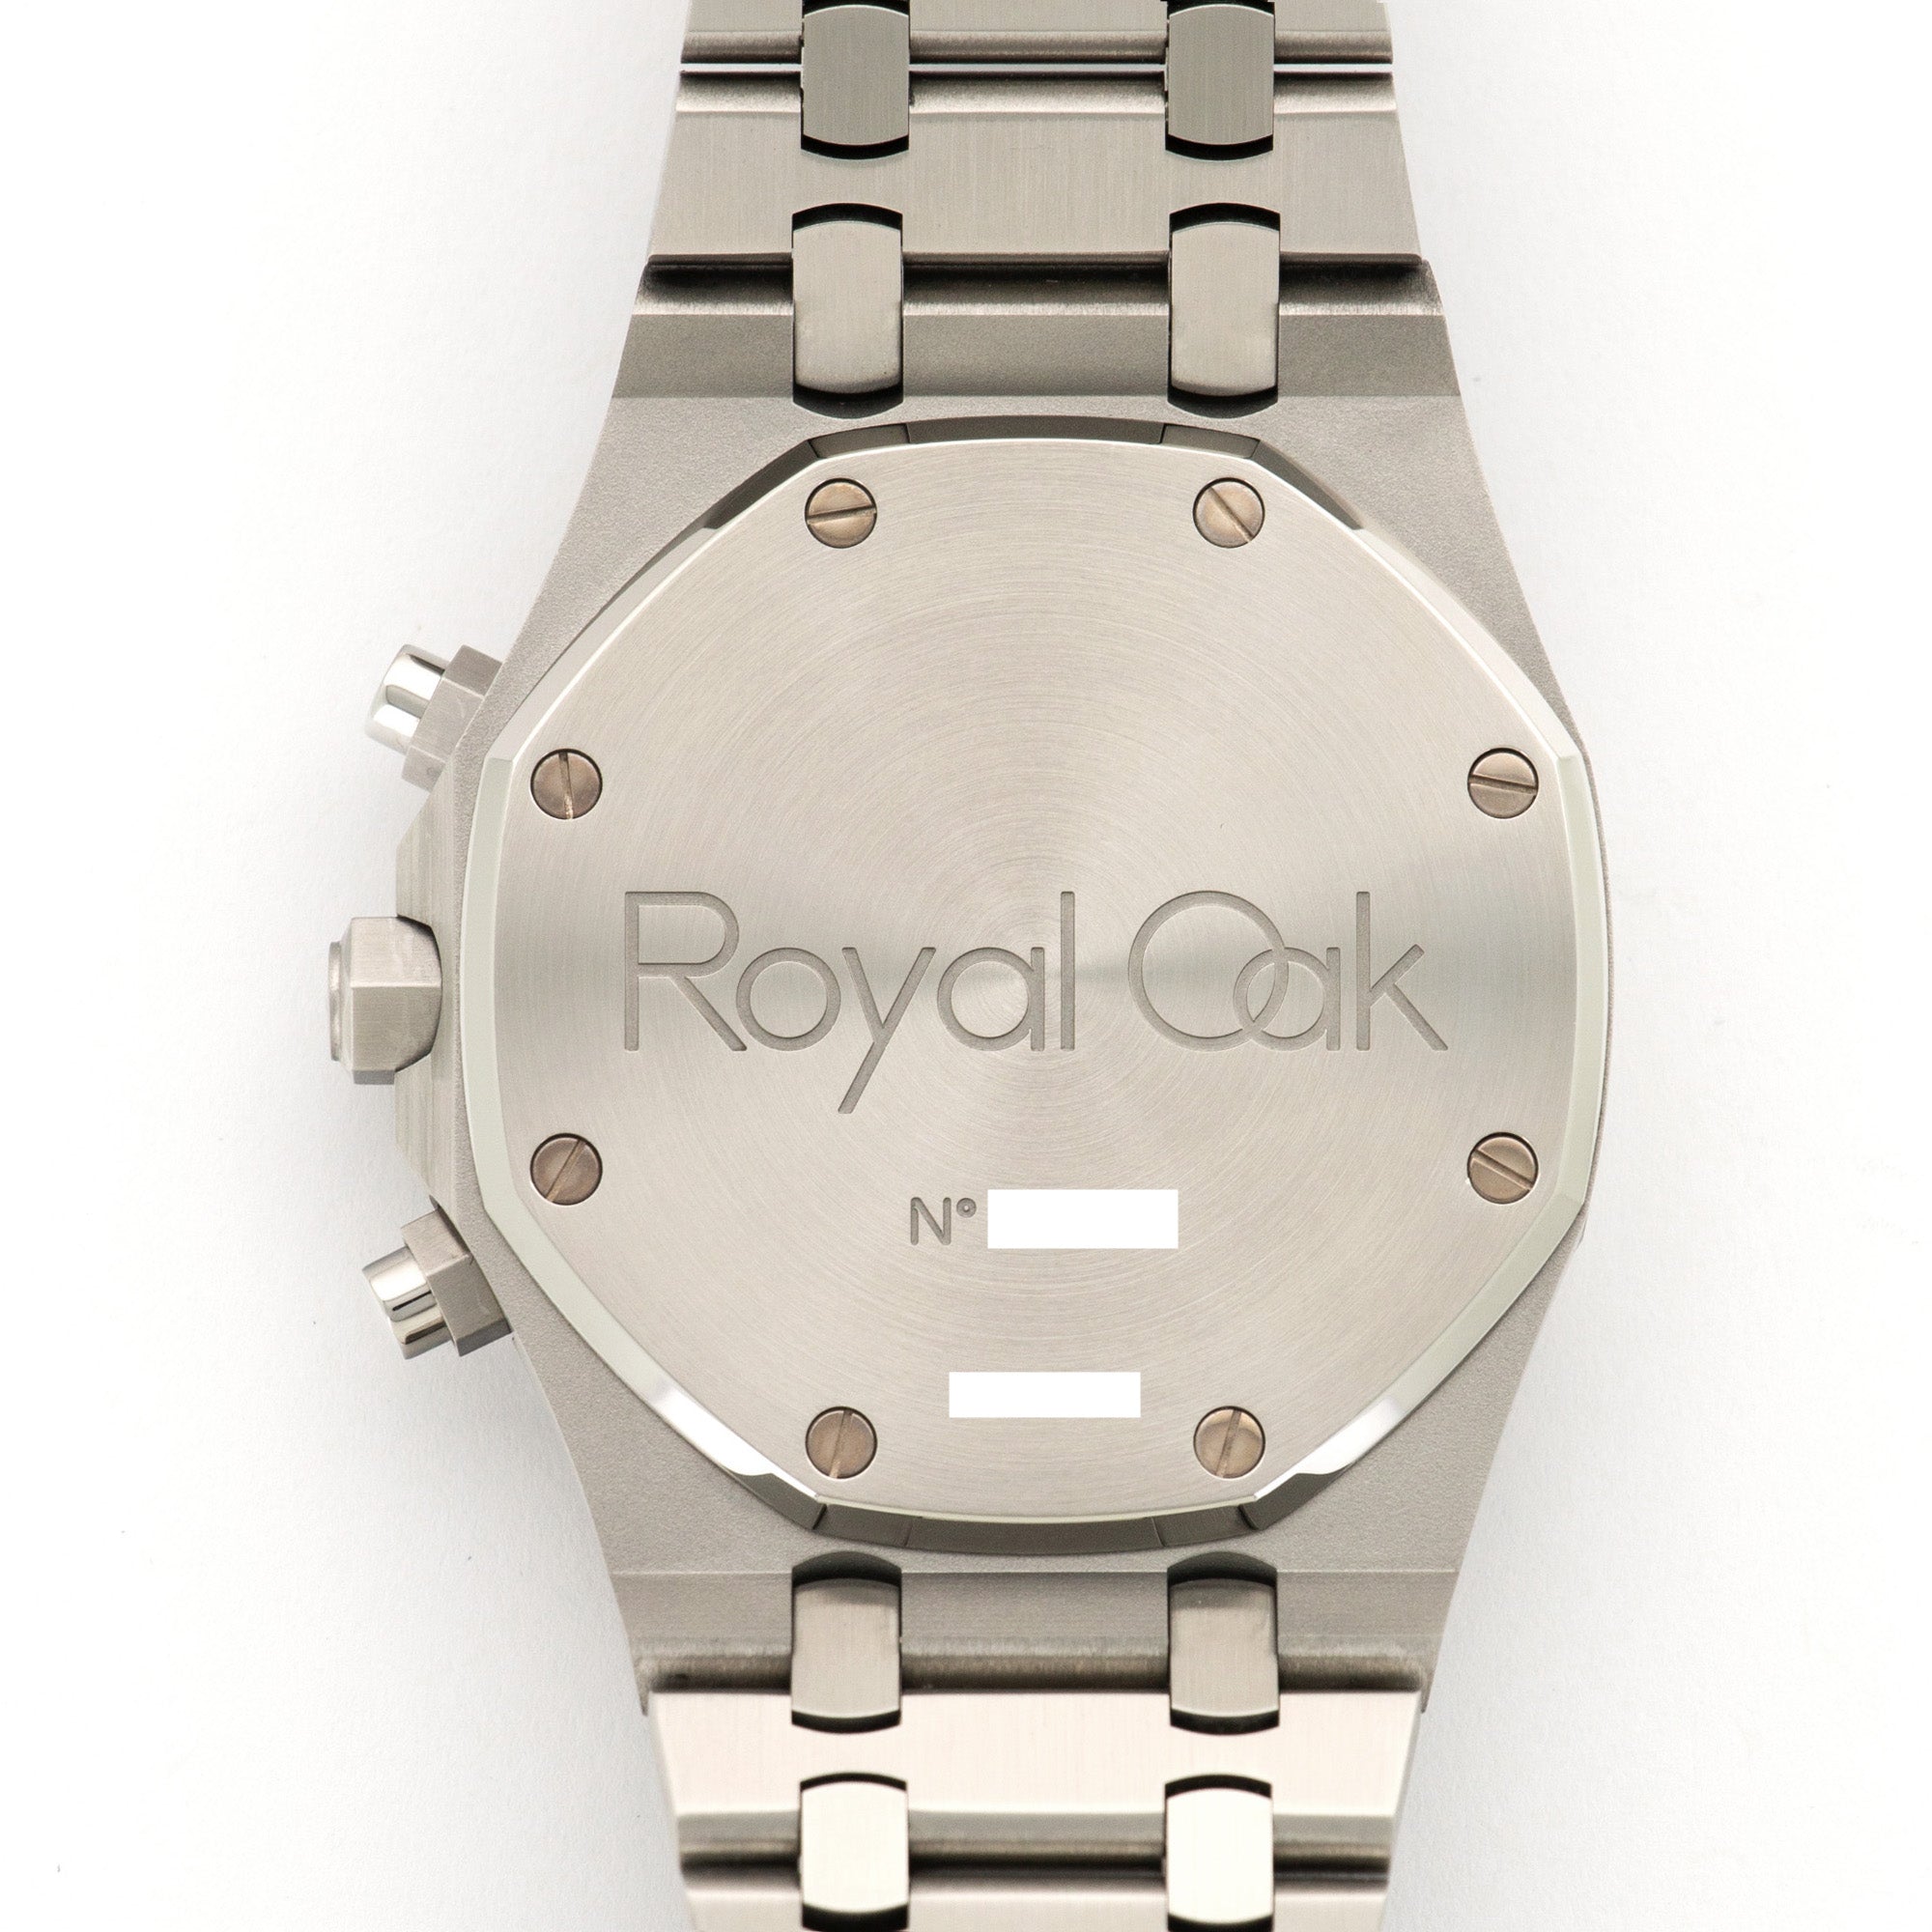 Audemars Piguet - Audemars Piguet Royal Oak Chronograph Watch Ref. 25860 - The Keystone Watches